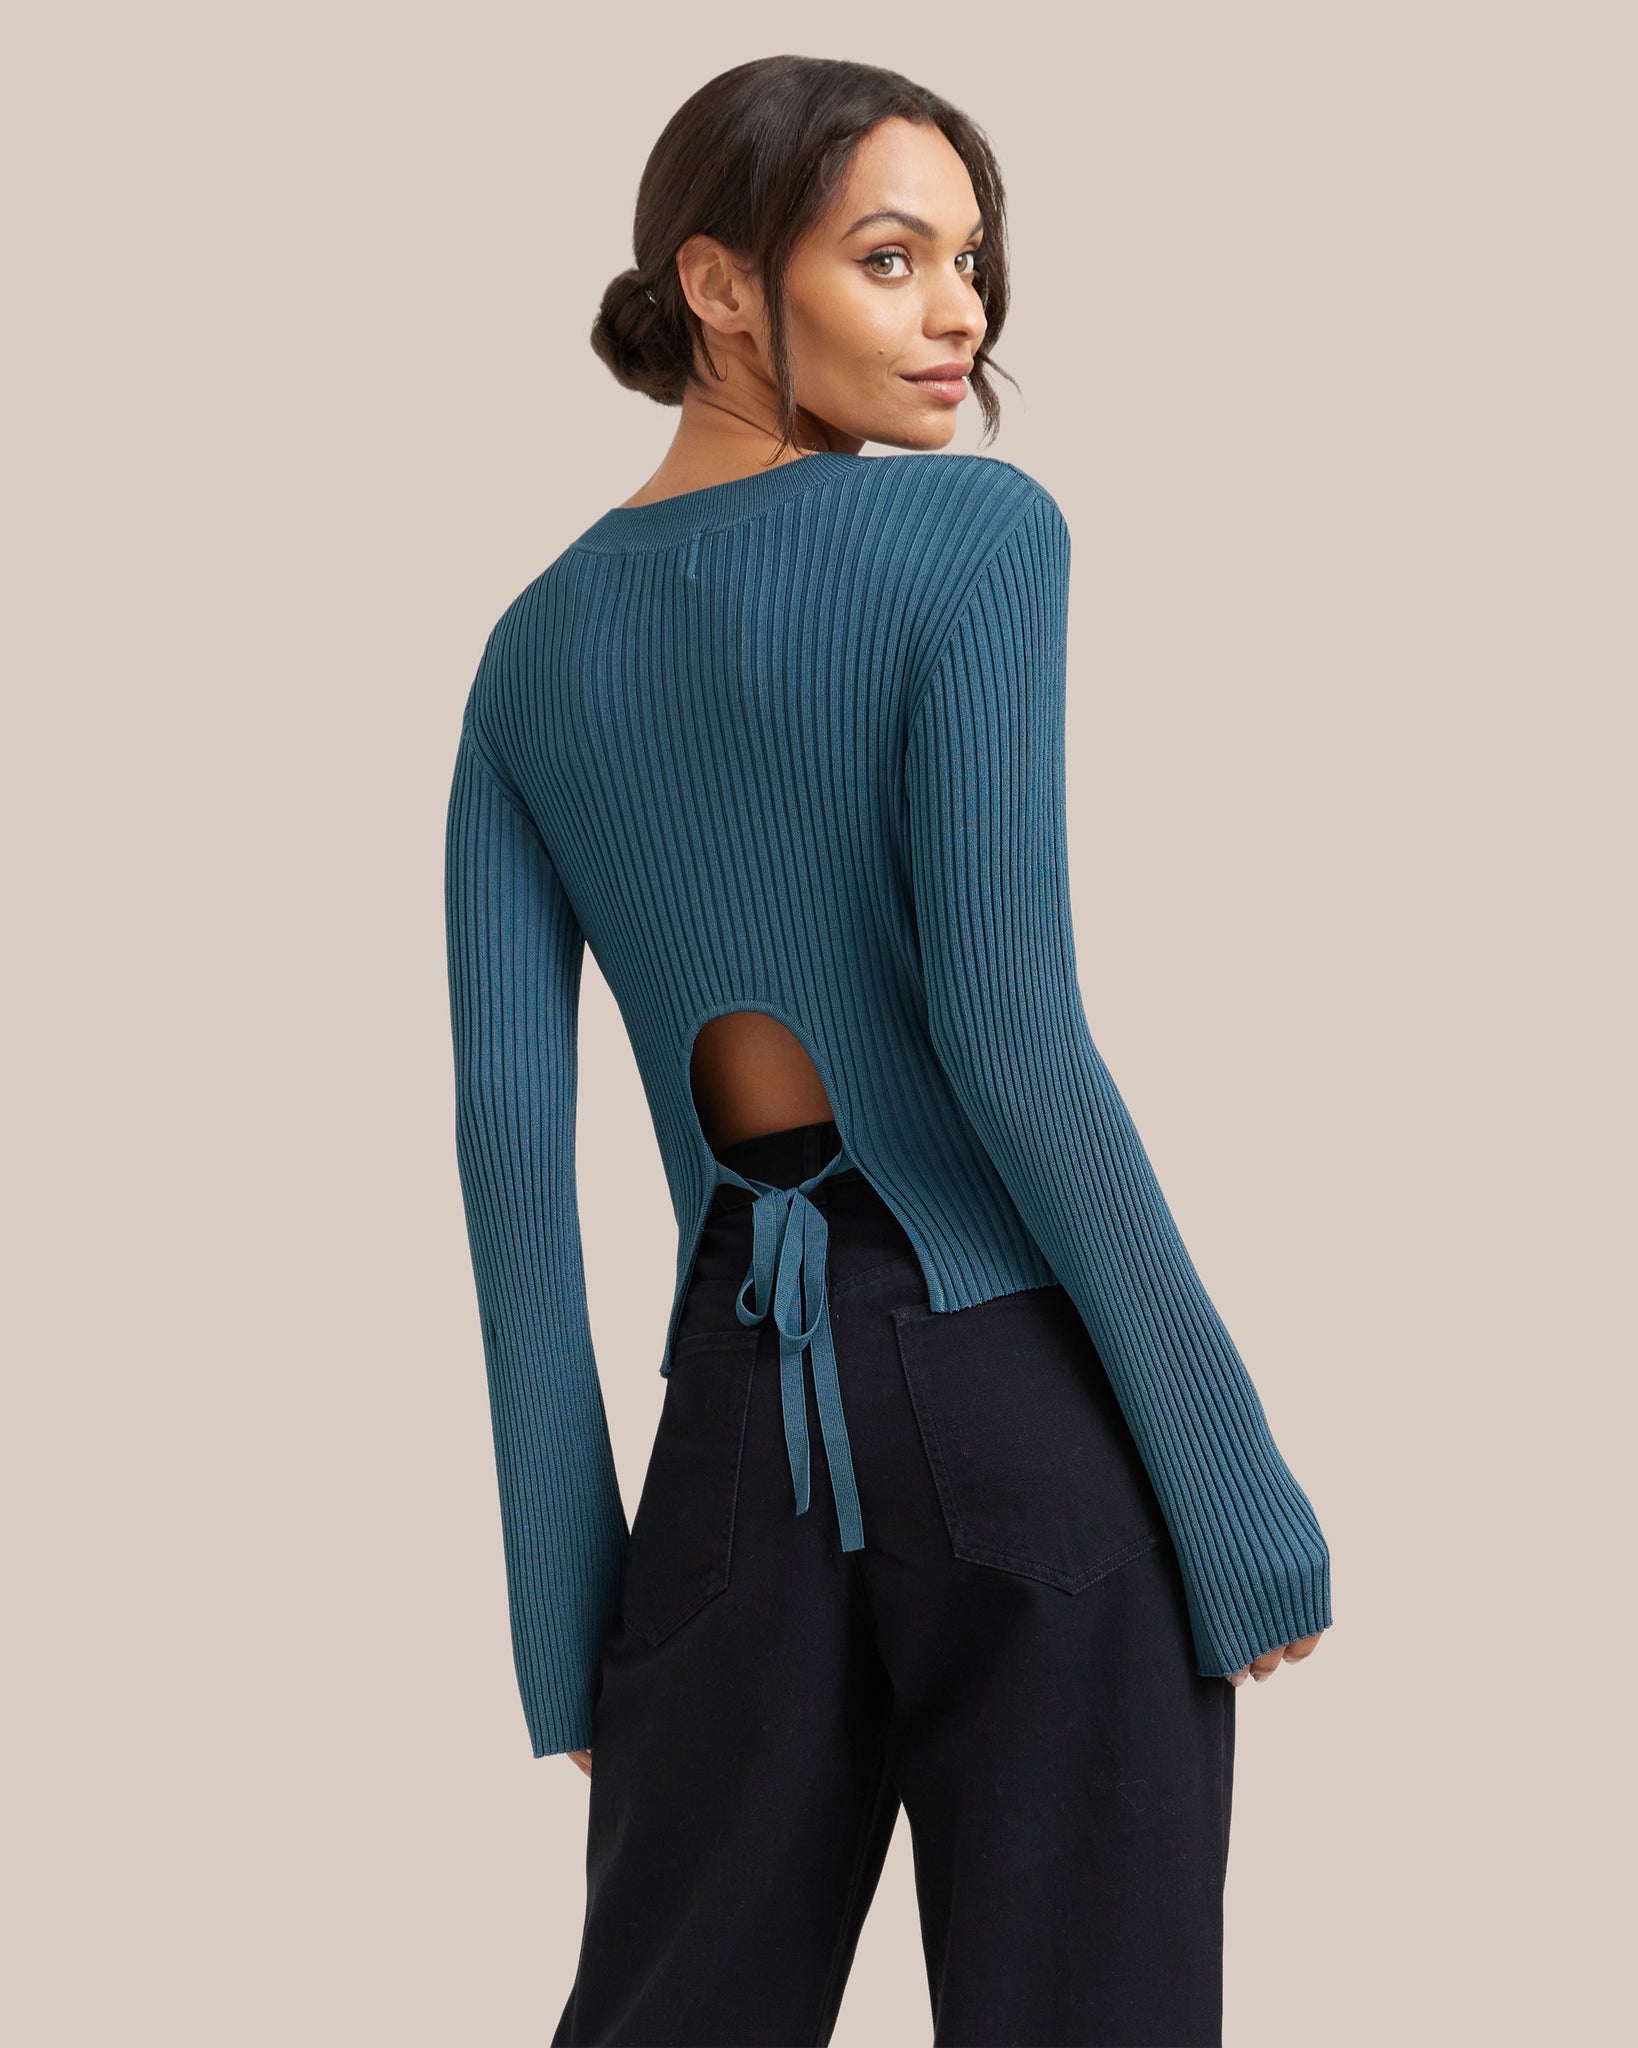 Chandi Open-Back Tie Sweater